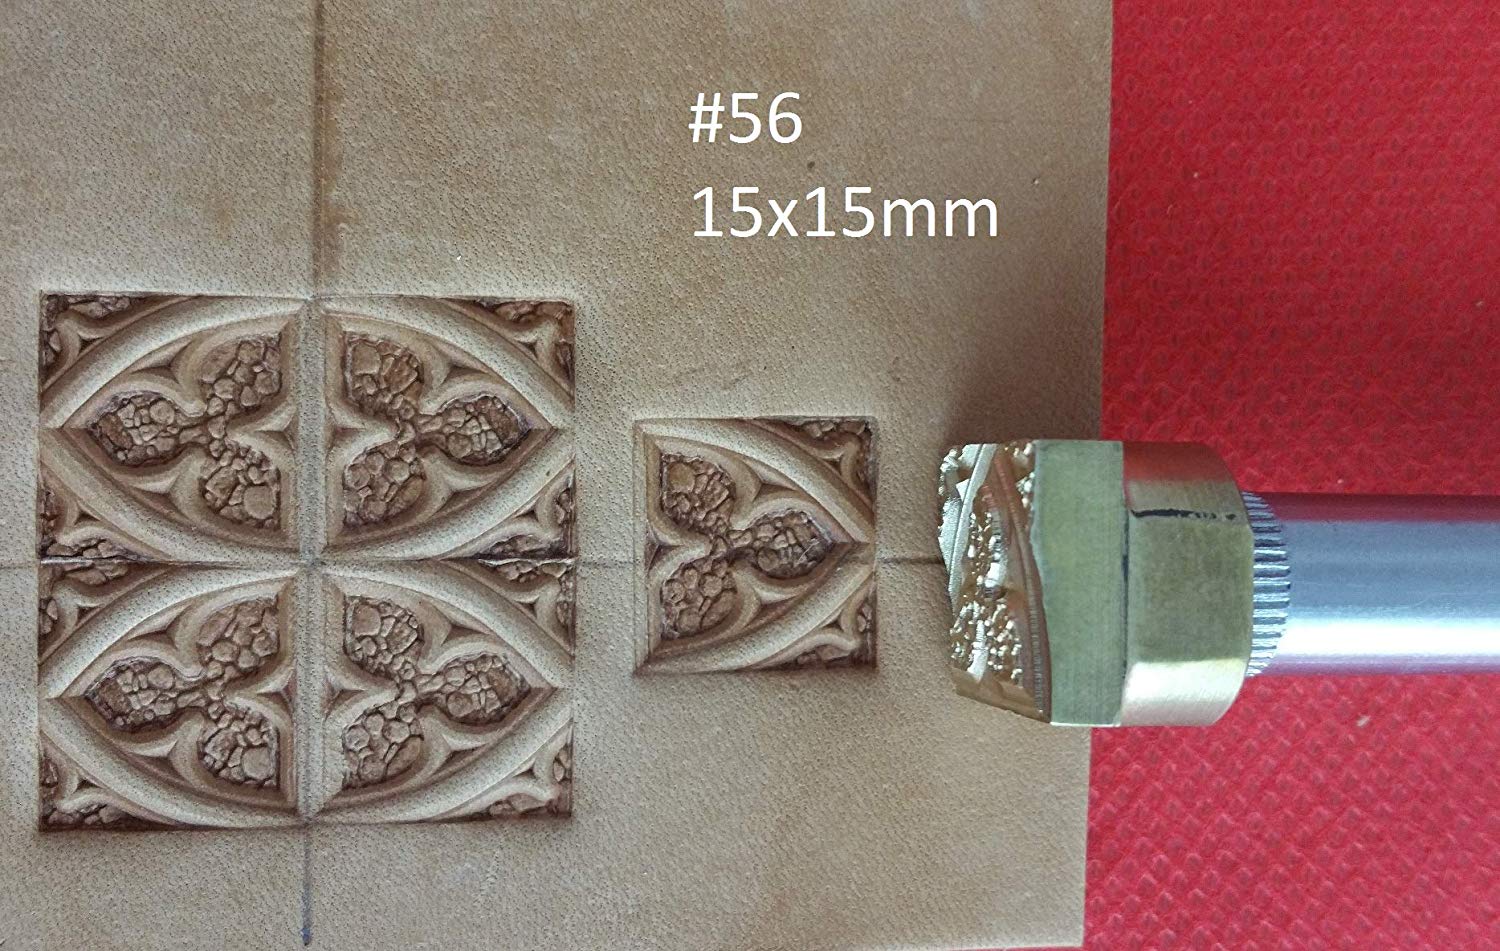 Leather stamp tool #56 - SpasGoranov